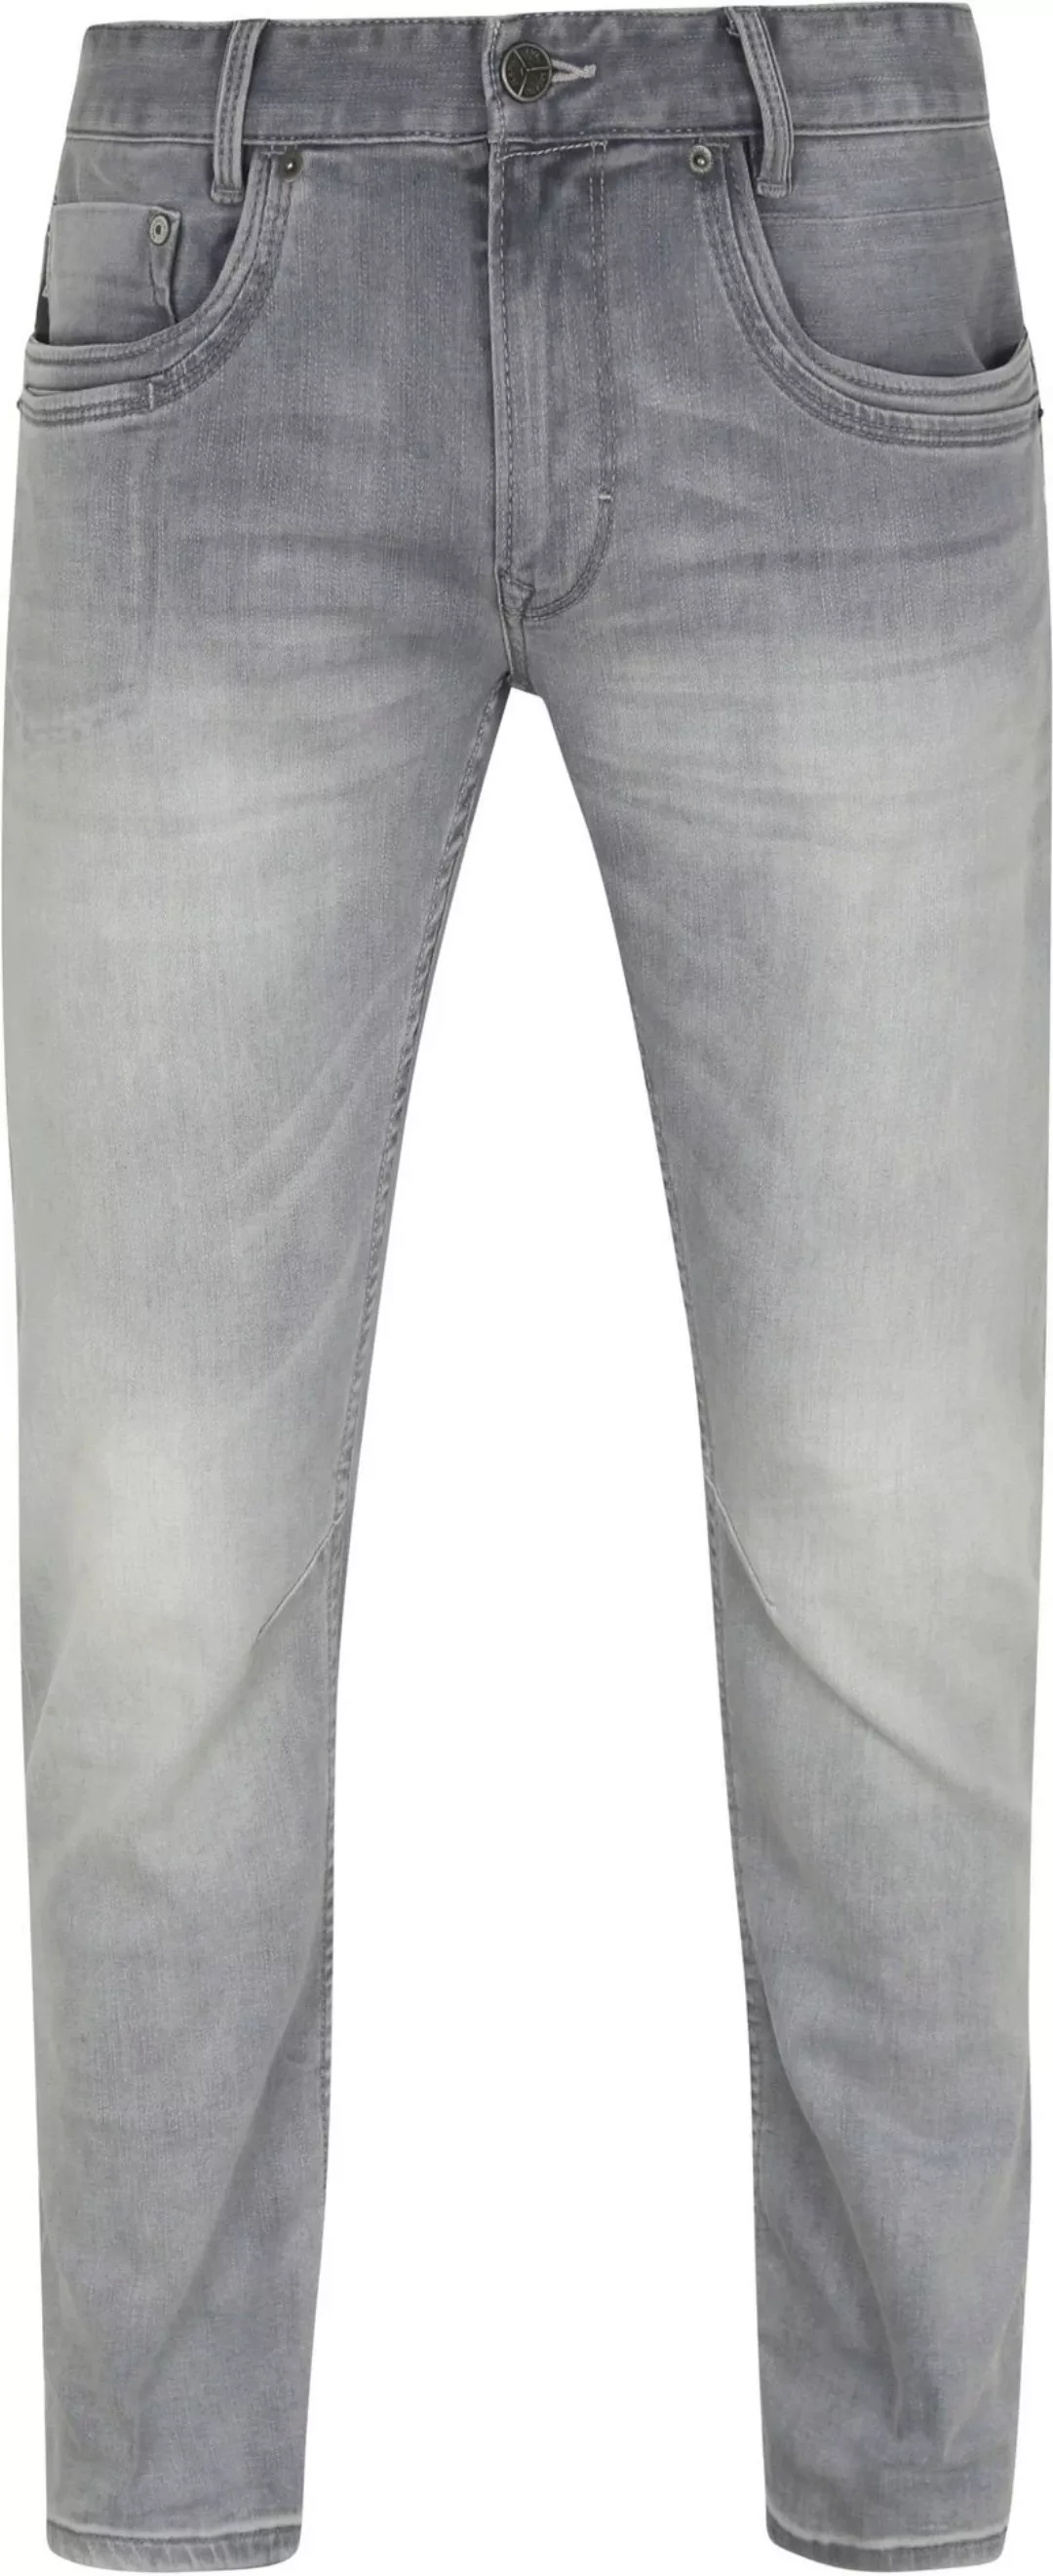 PME Legend Skymaster Jeans Grau Gebleicht - Größe W 29 - L 30 günstig online kaufen